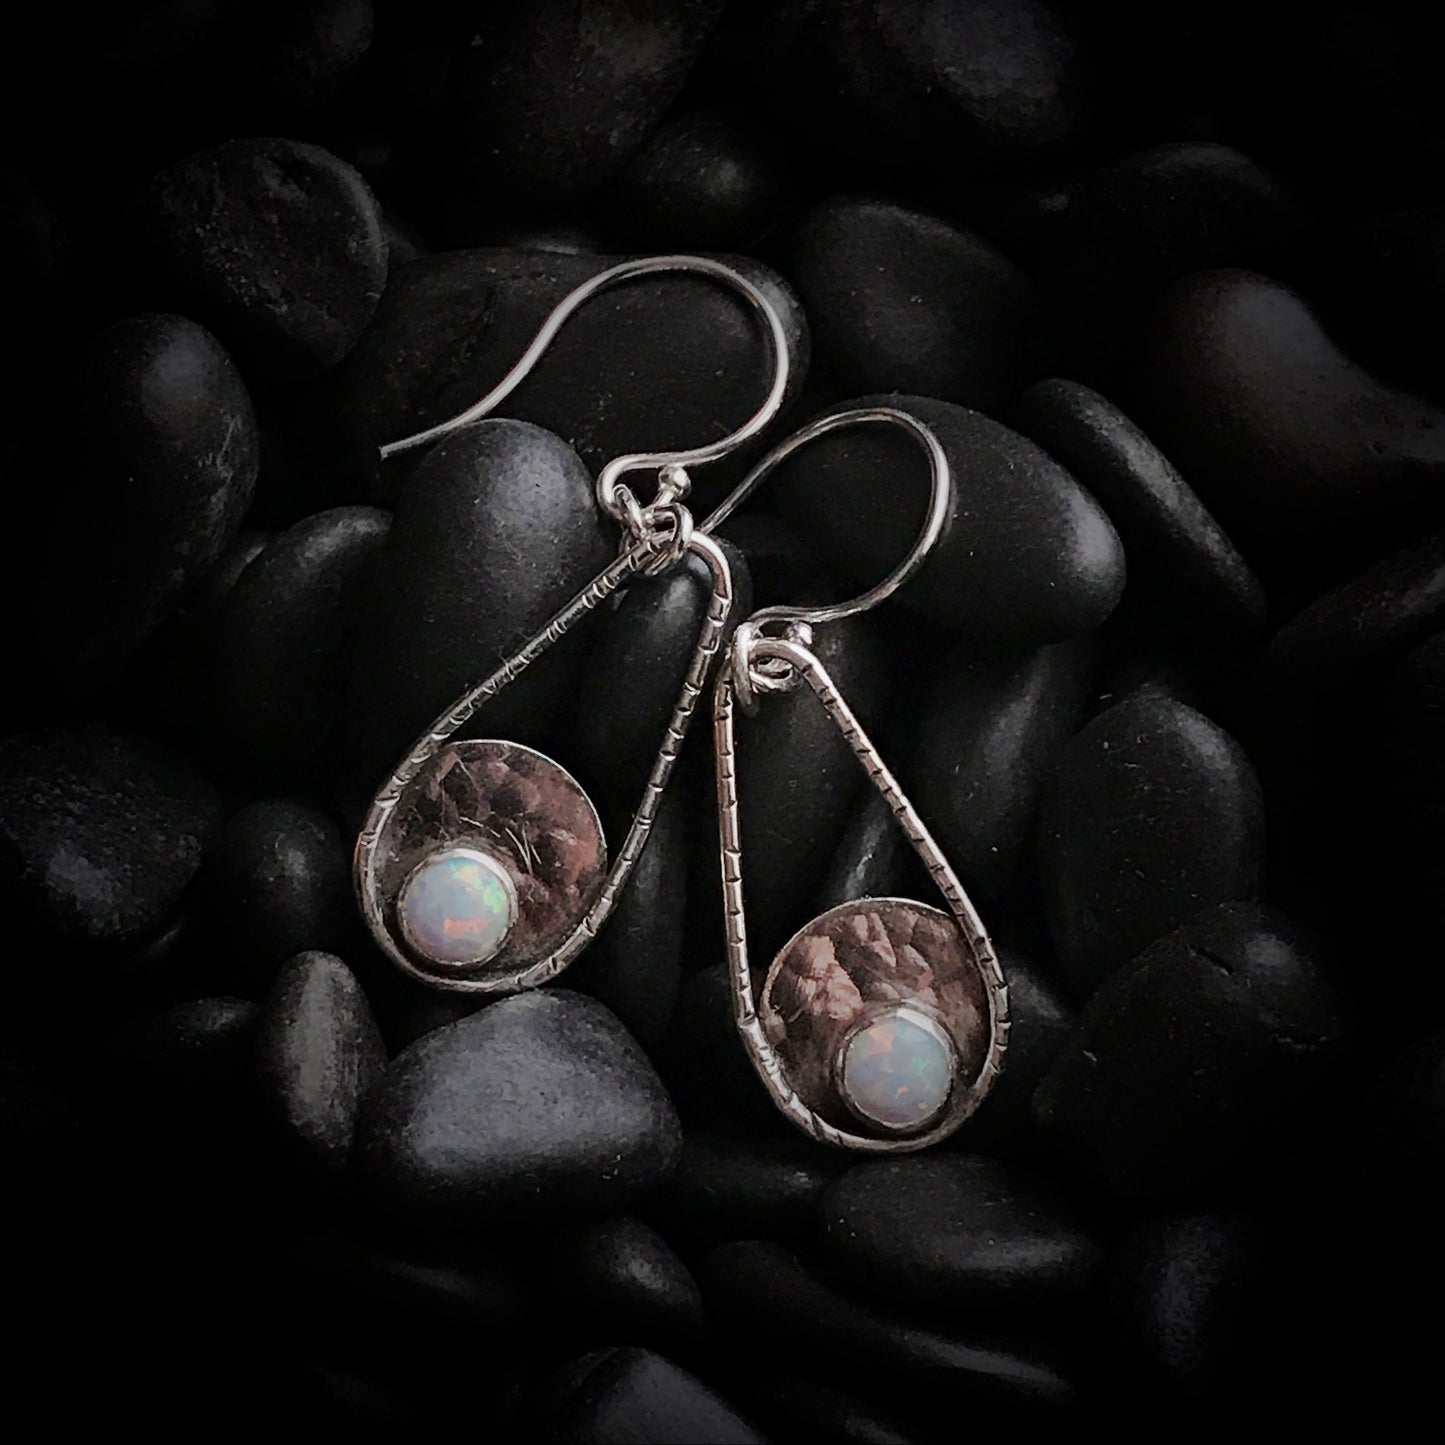 Dalla - Opal & Sterling Silver Earrings